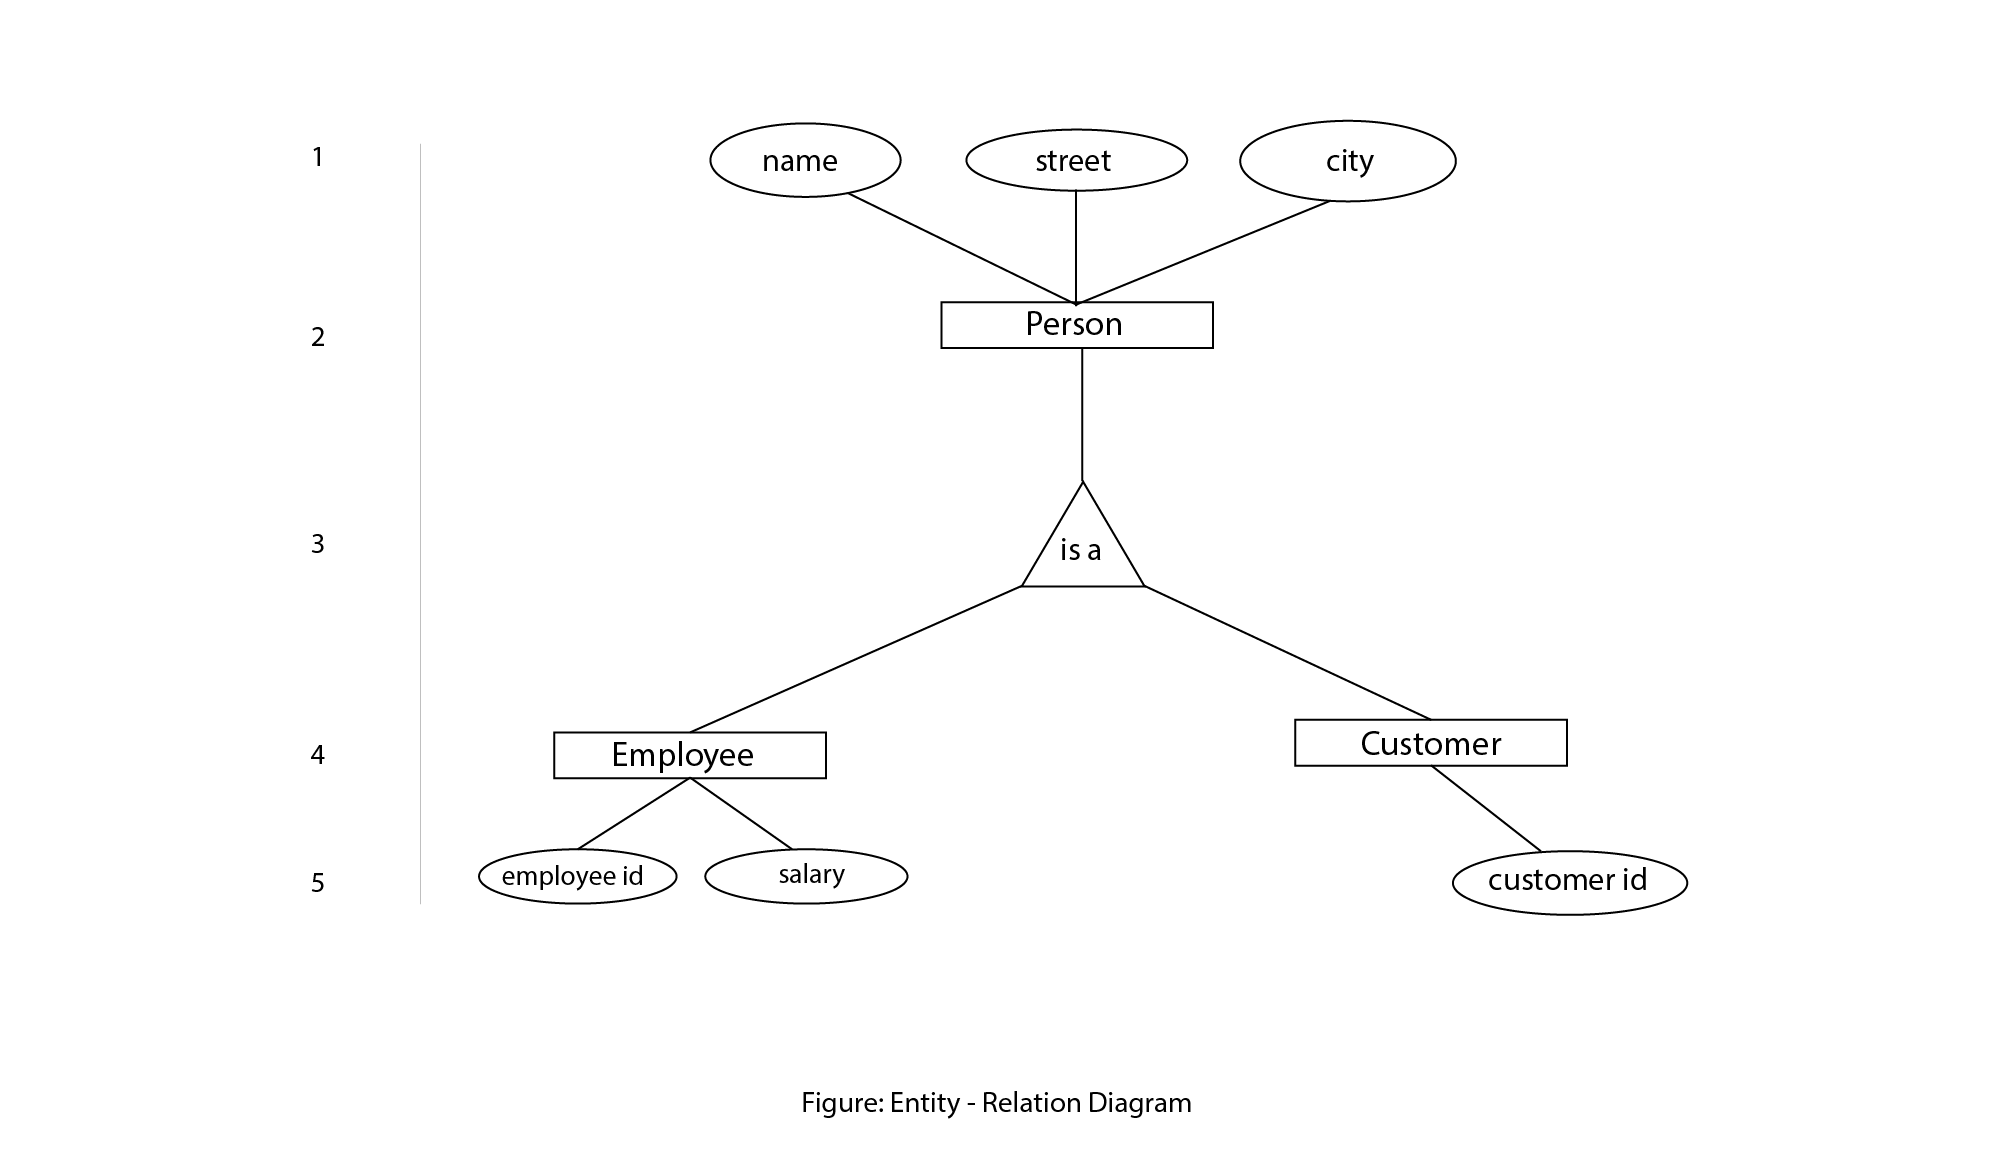 E-R diagram